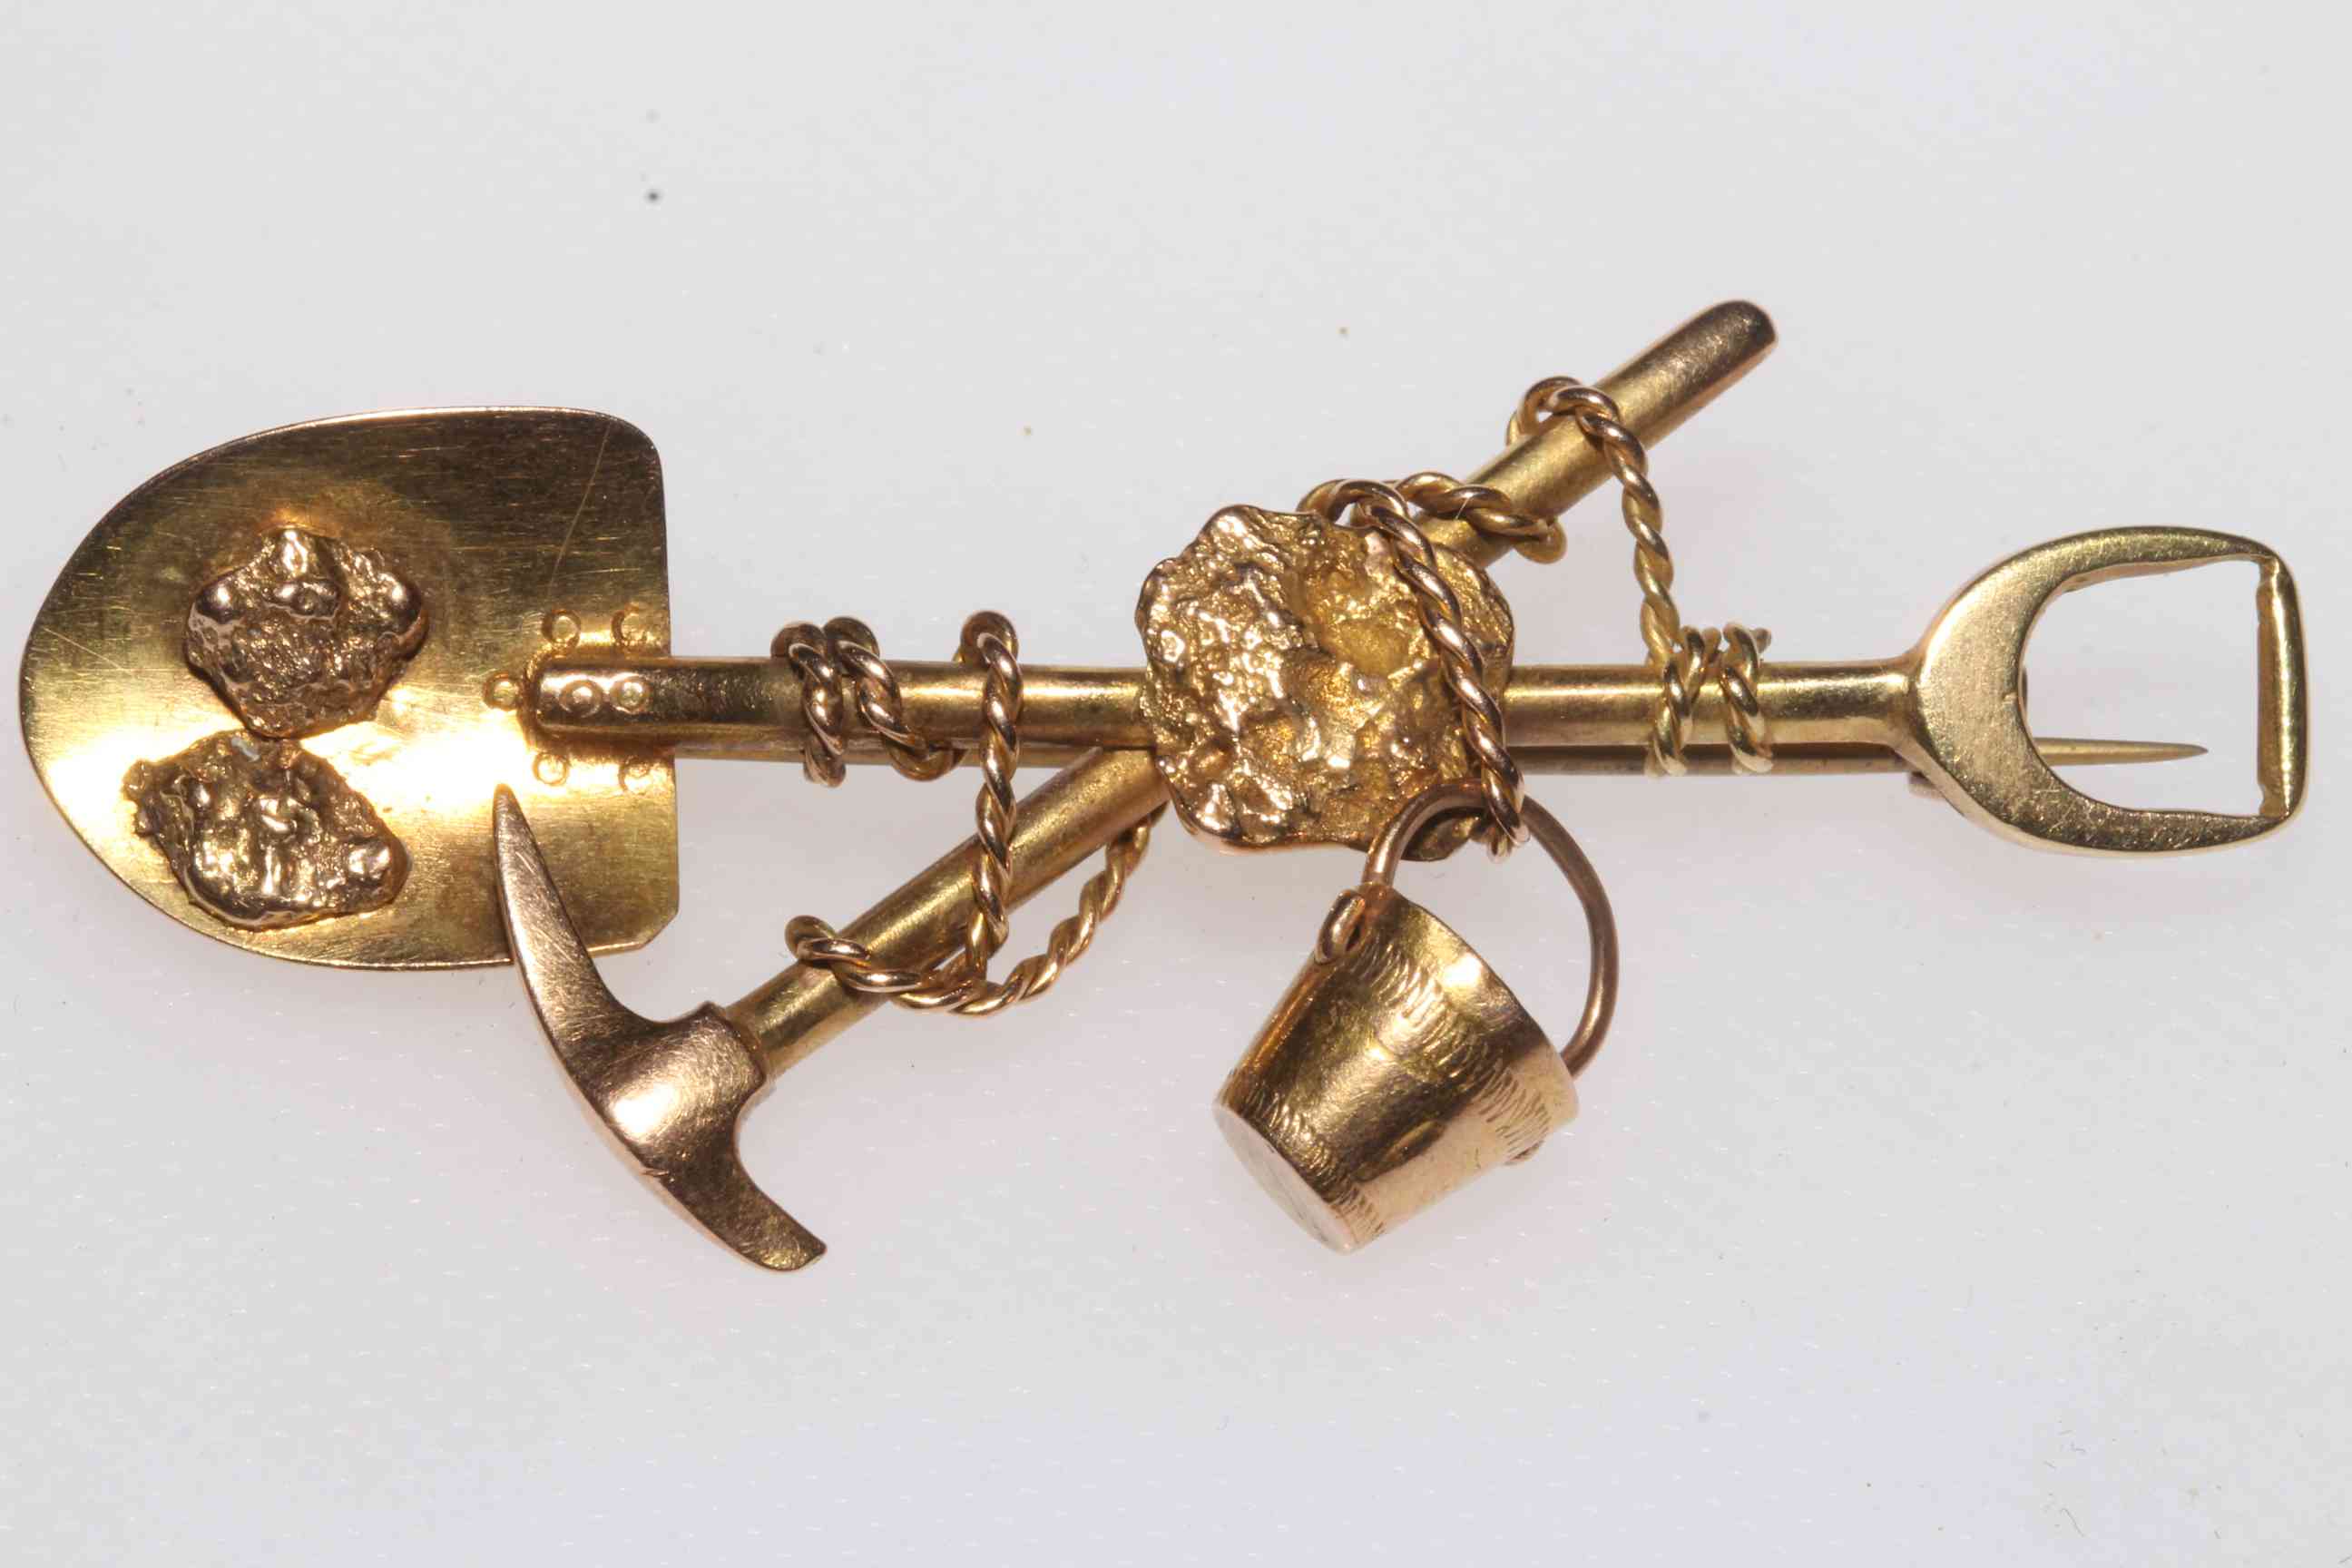 18 carat gold 'Klondike' brooch, 5.5cm across.